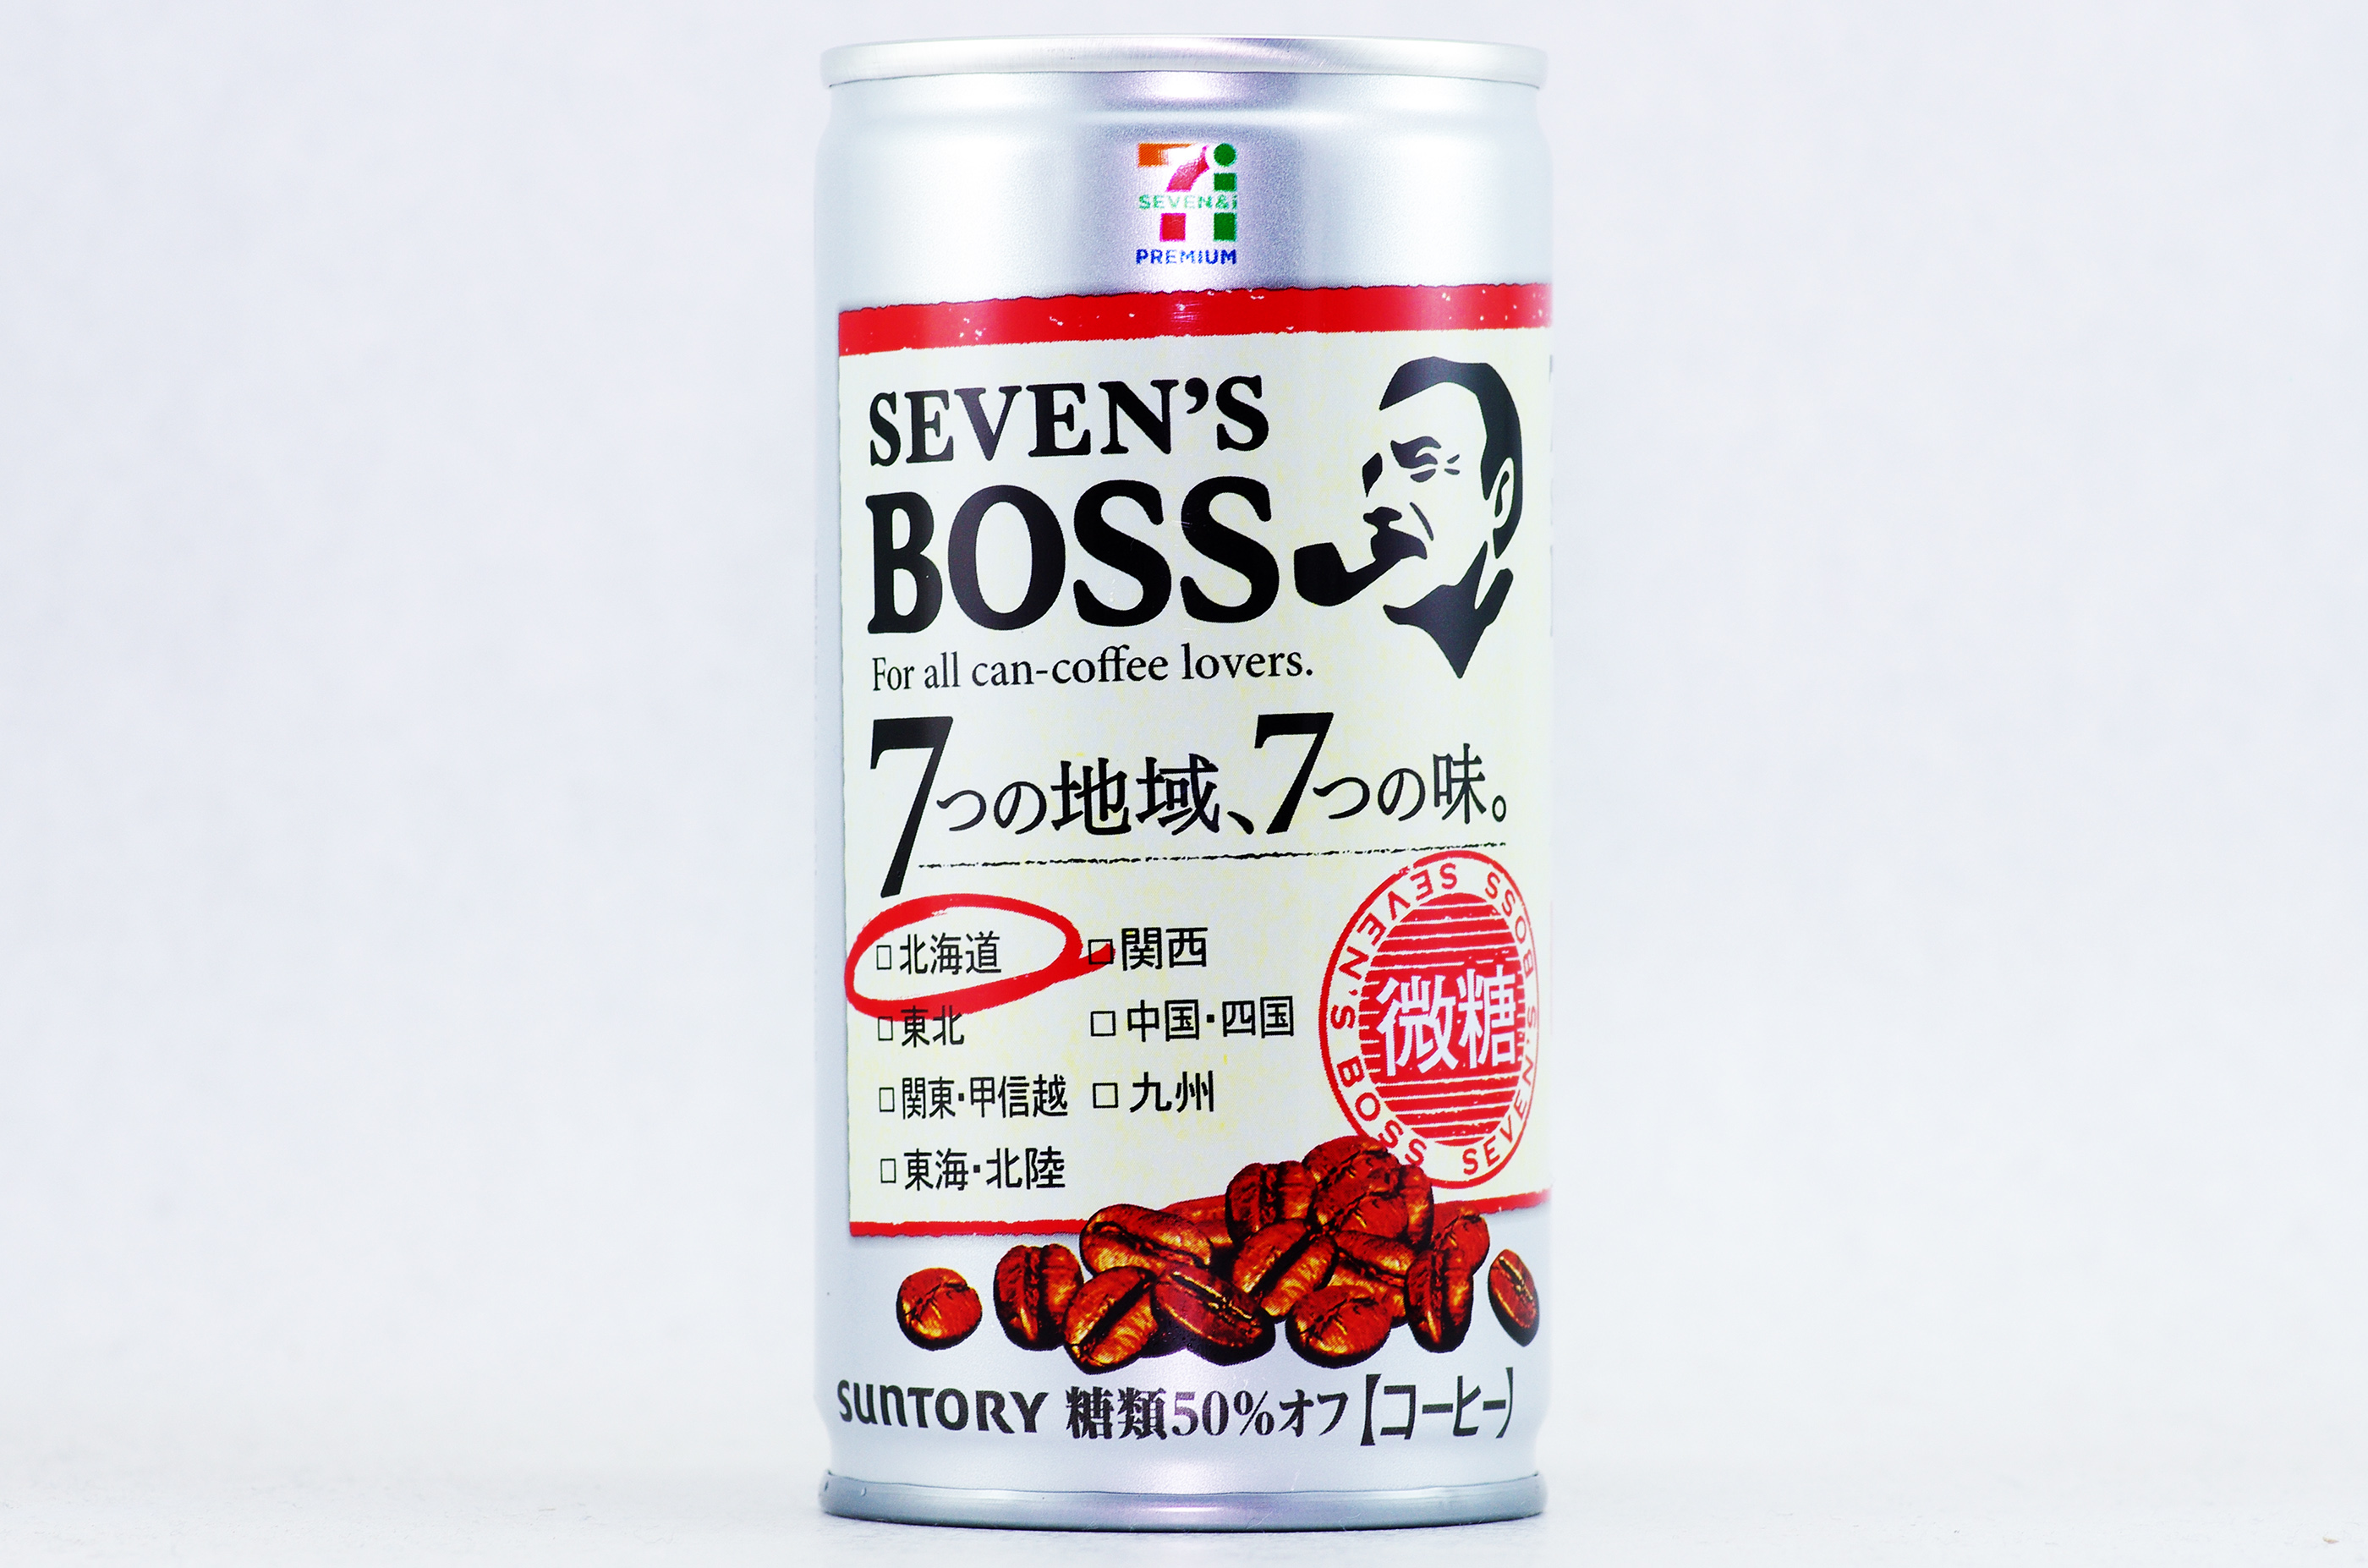 SEVEN'S BOSS 微糖 北海道限定 2018年12月